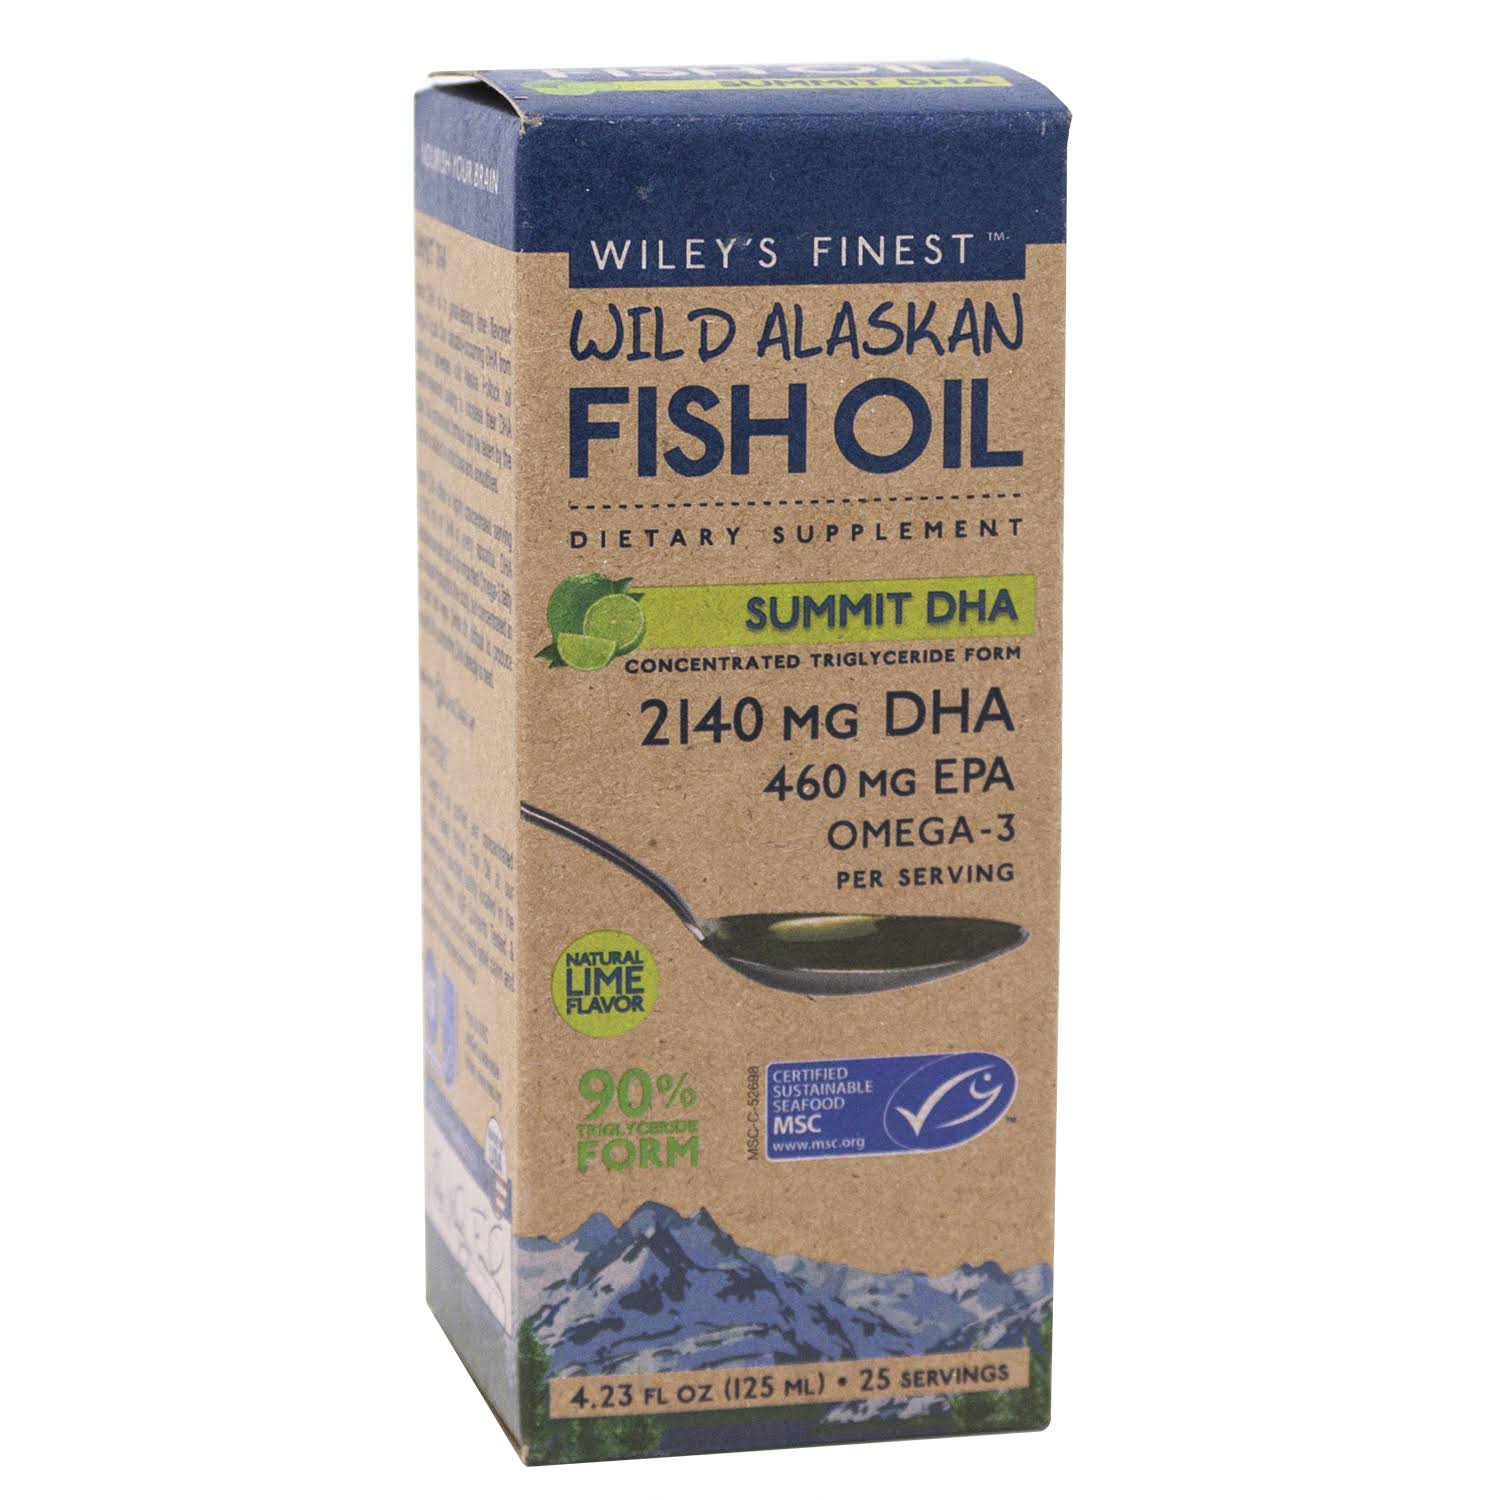 Wiley's Finest Wild Alaskan Fish Oil Summit DHA (4.23 fl oz)